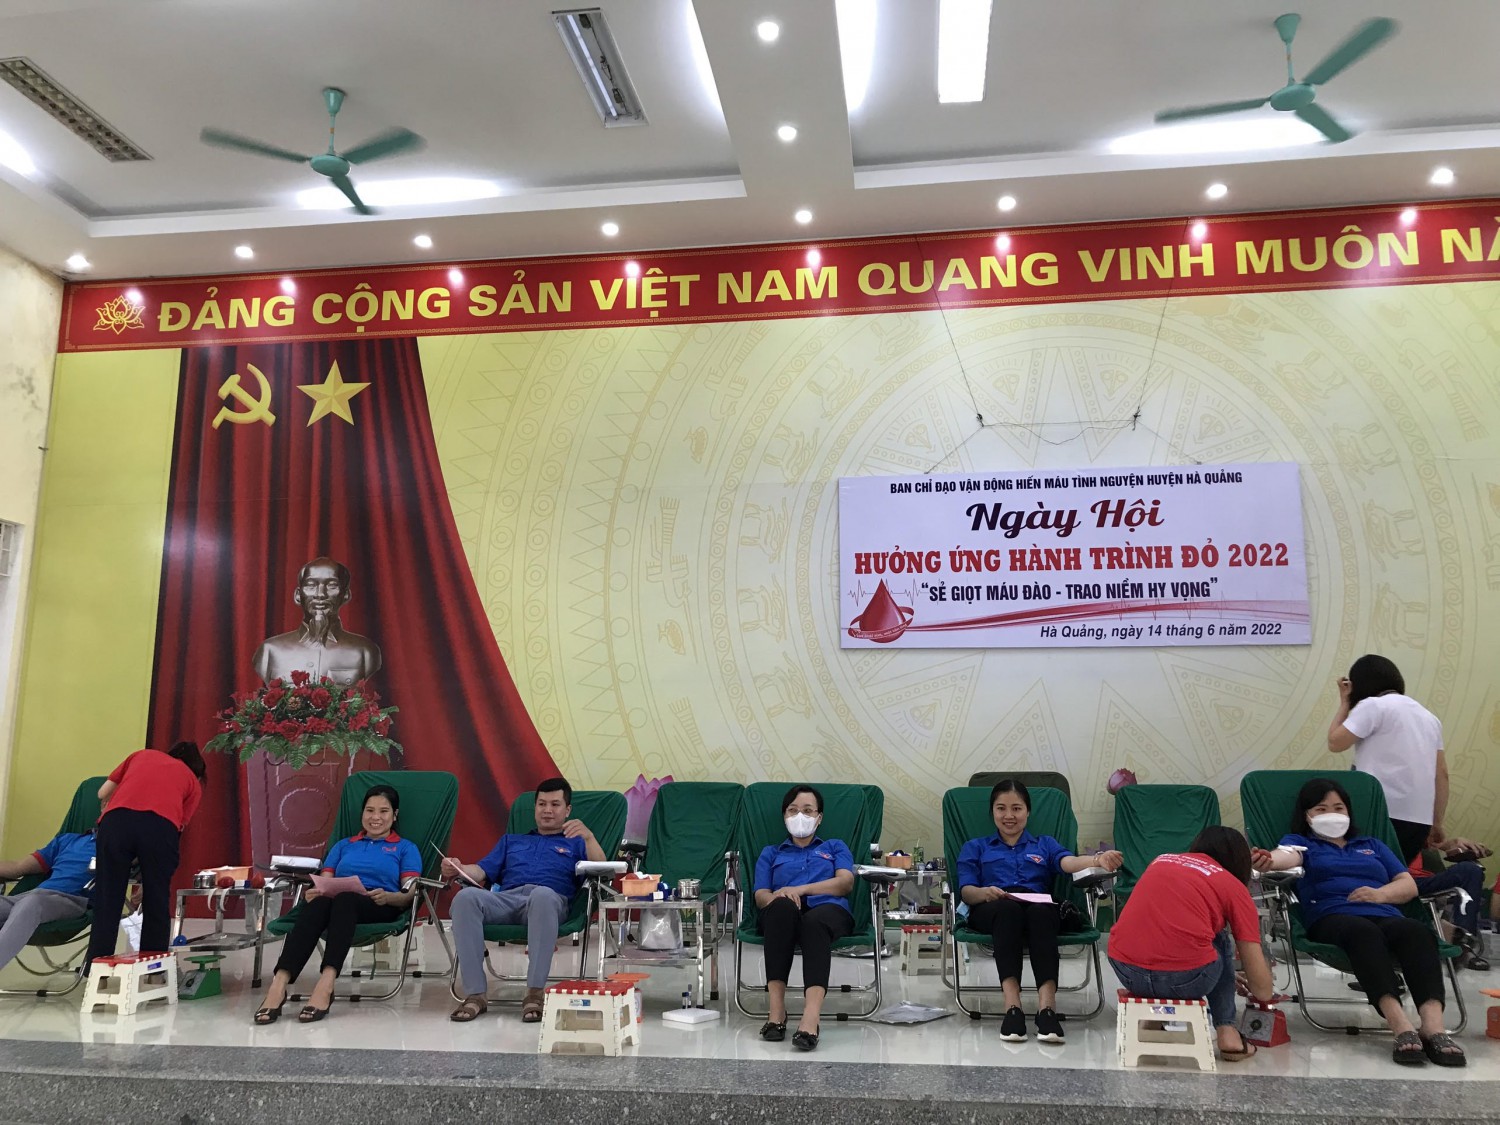 Đoàn viên, thanh niên huyện Hà Quảng tham gia Ngày hội Hưởng ứng Hành trình đỏ năm 2022